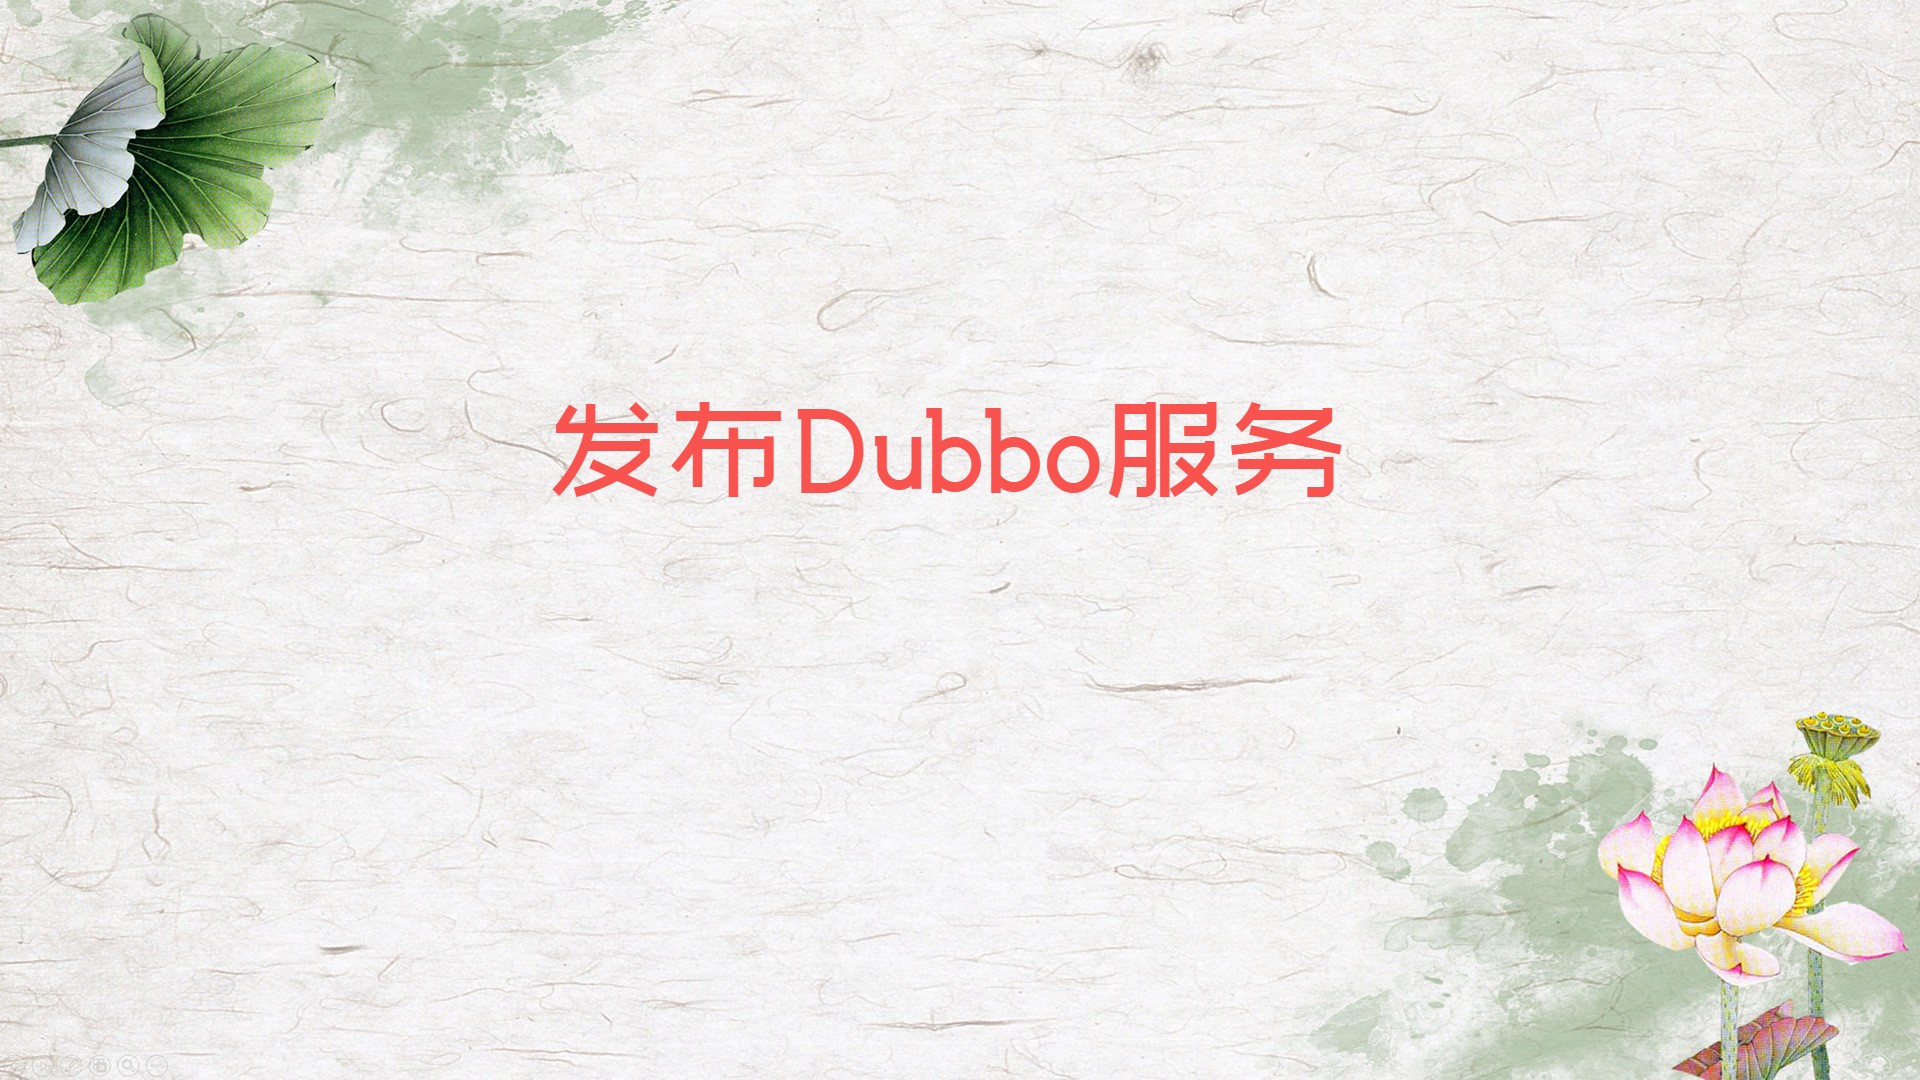 发布Dubbo服务